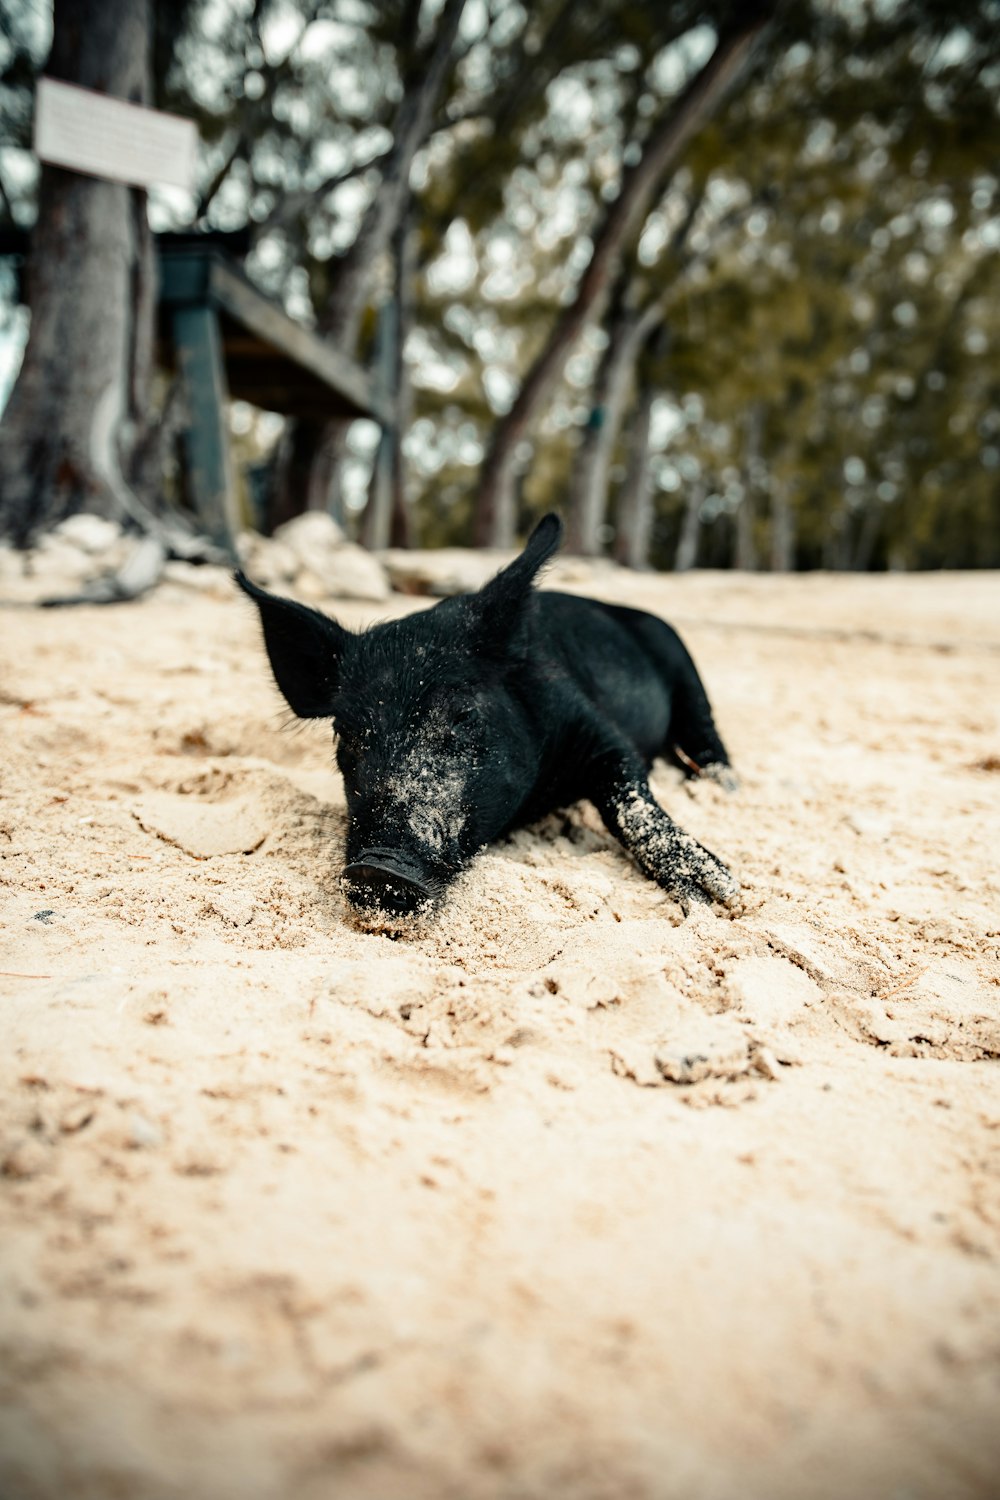 black pig walking on brown sand during daytime